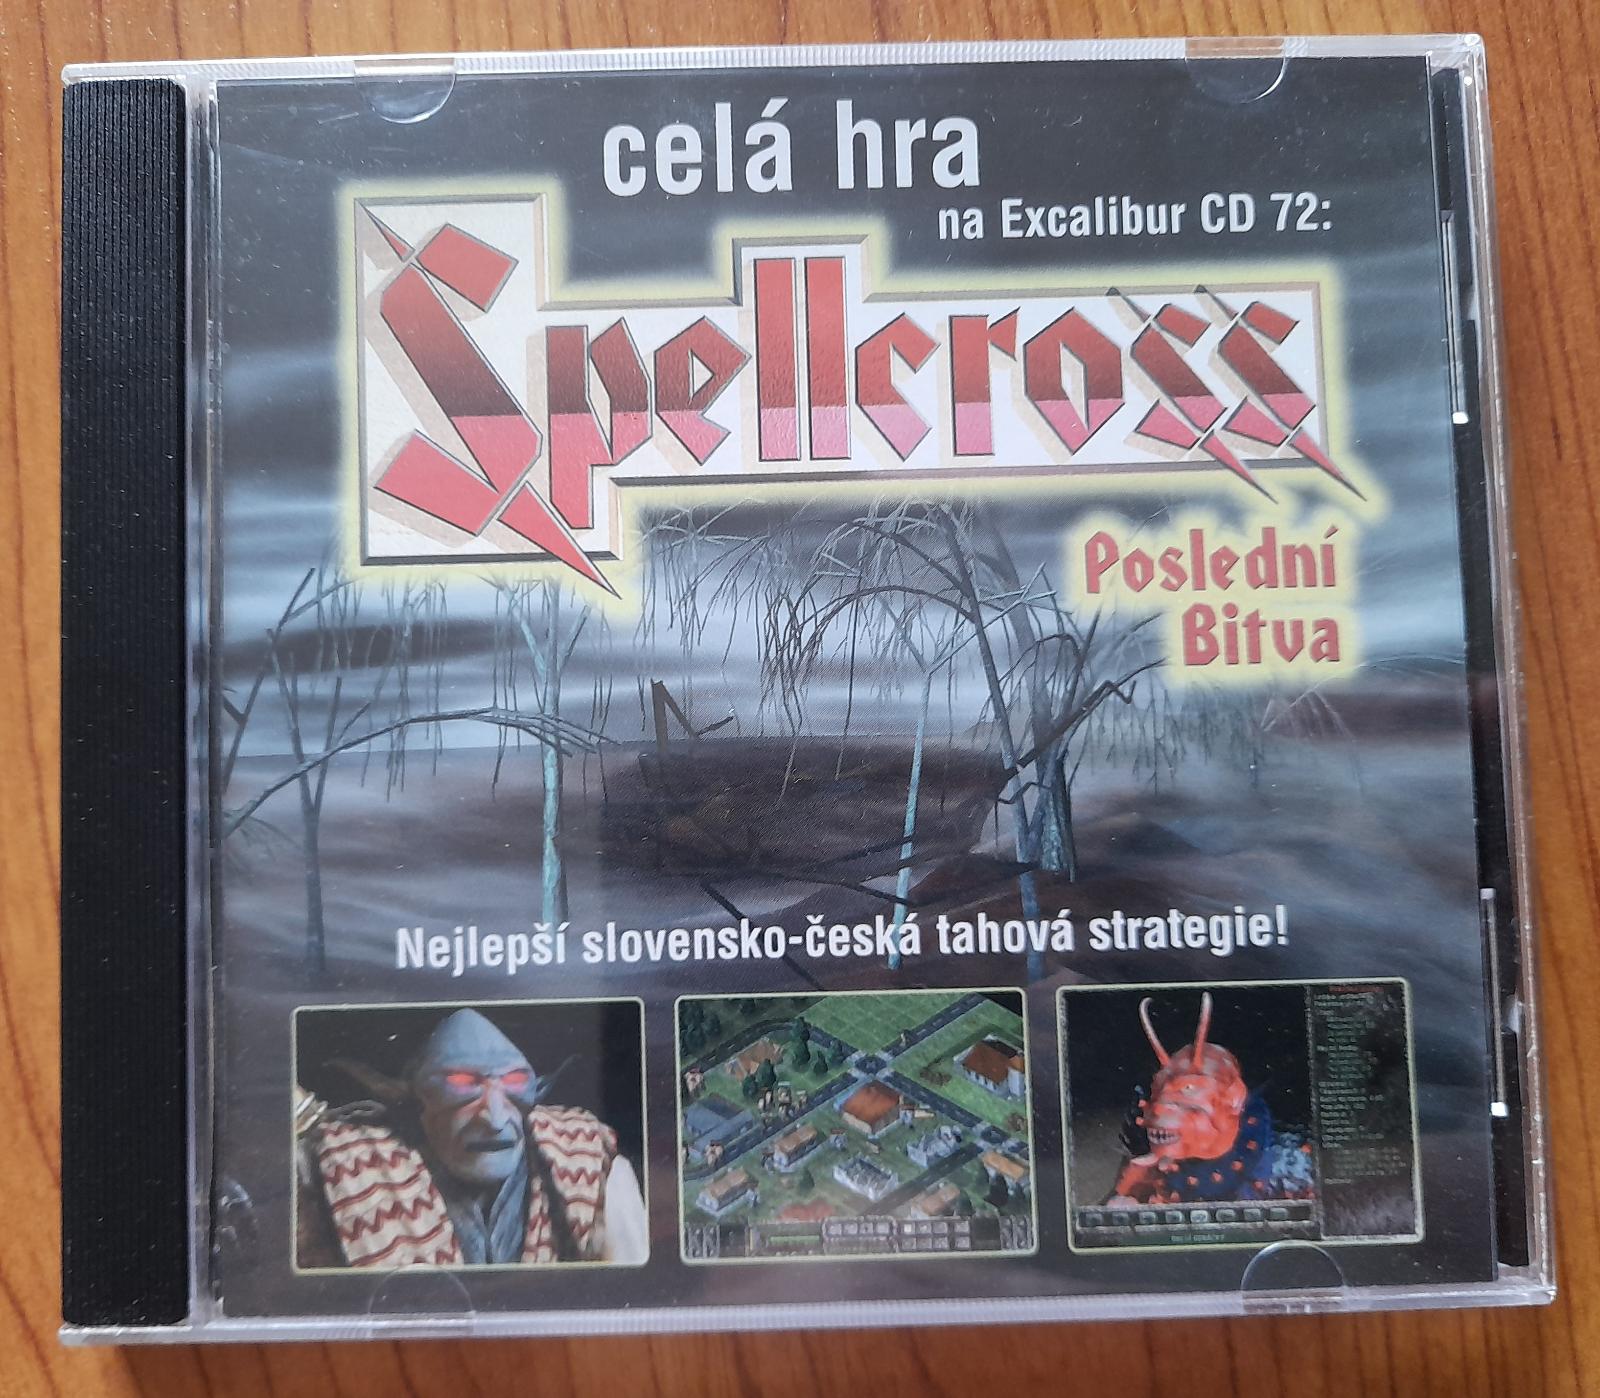 Pc hra Spellcross, príloha č. 72 časopisu Excalibur - Hry